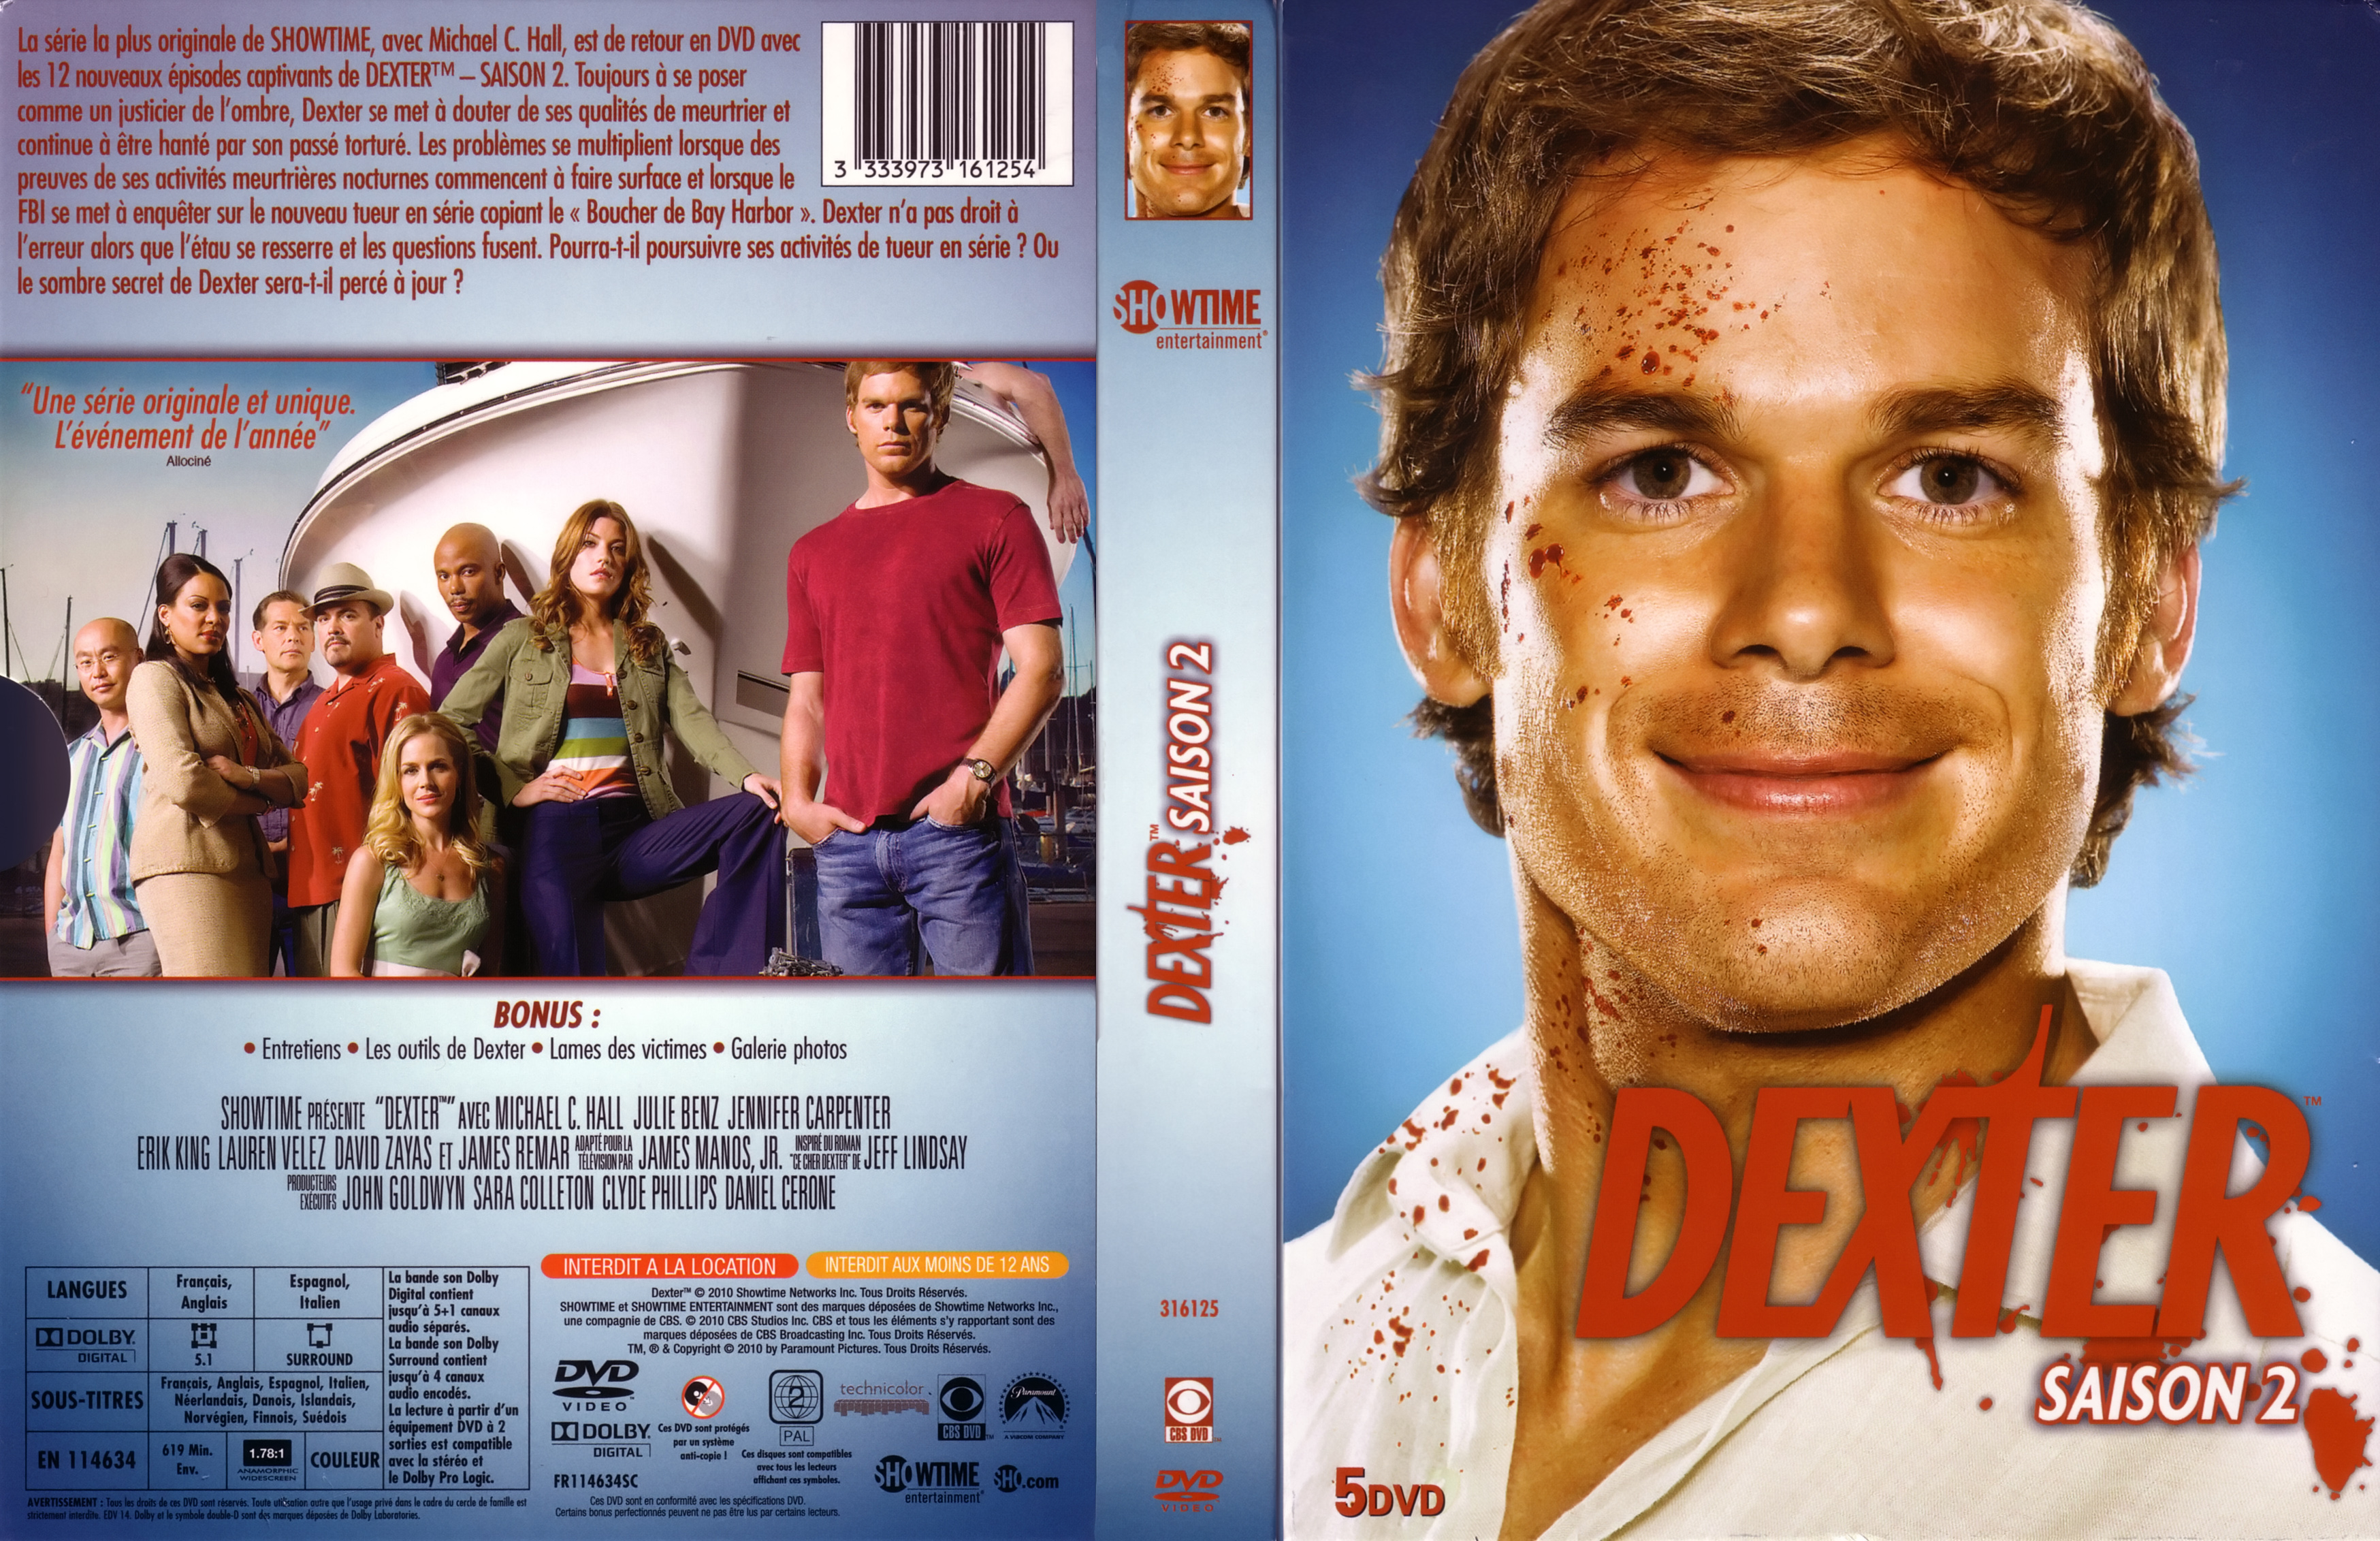 Jaquette DVD Dexter Saison 2 COFFRET